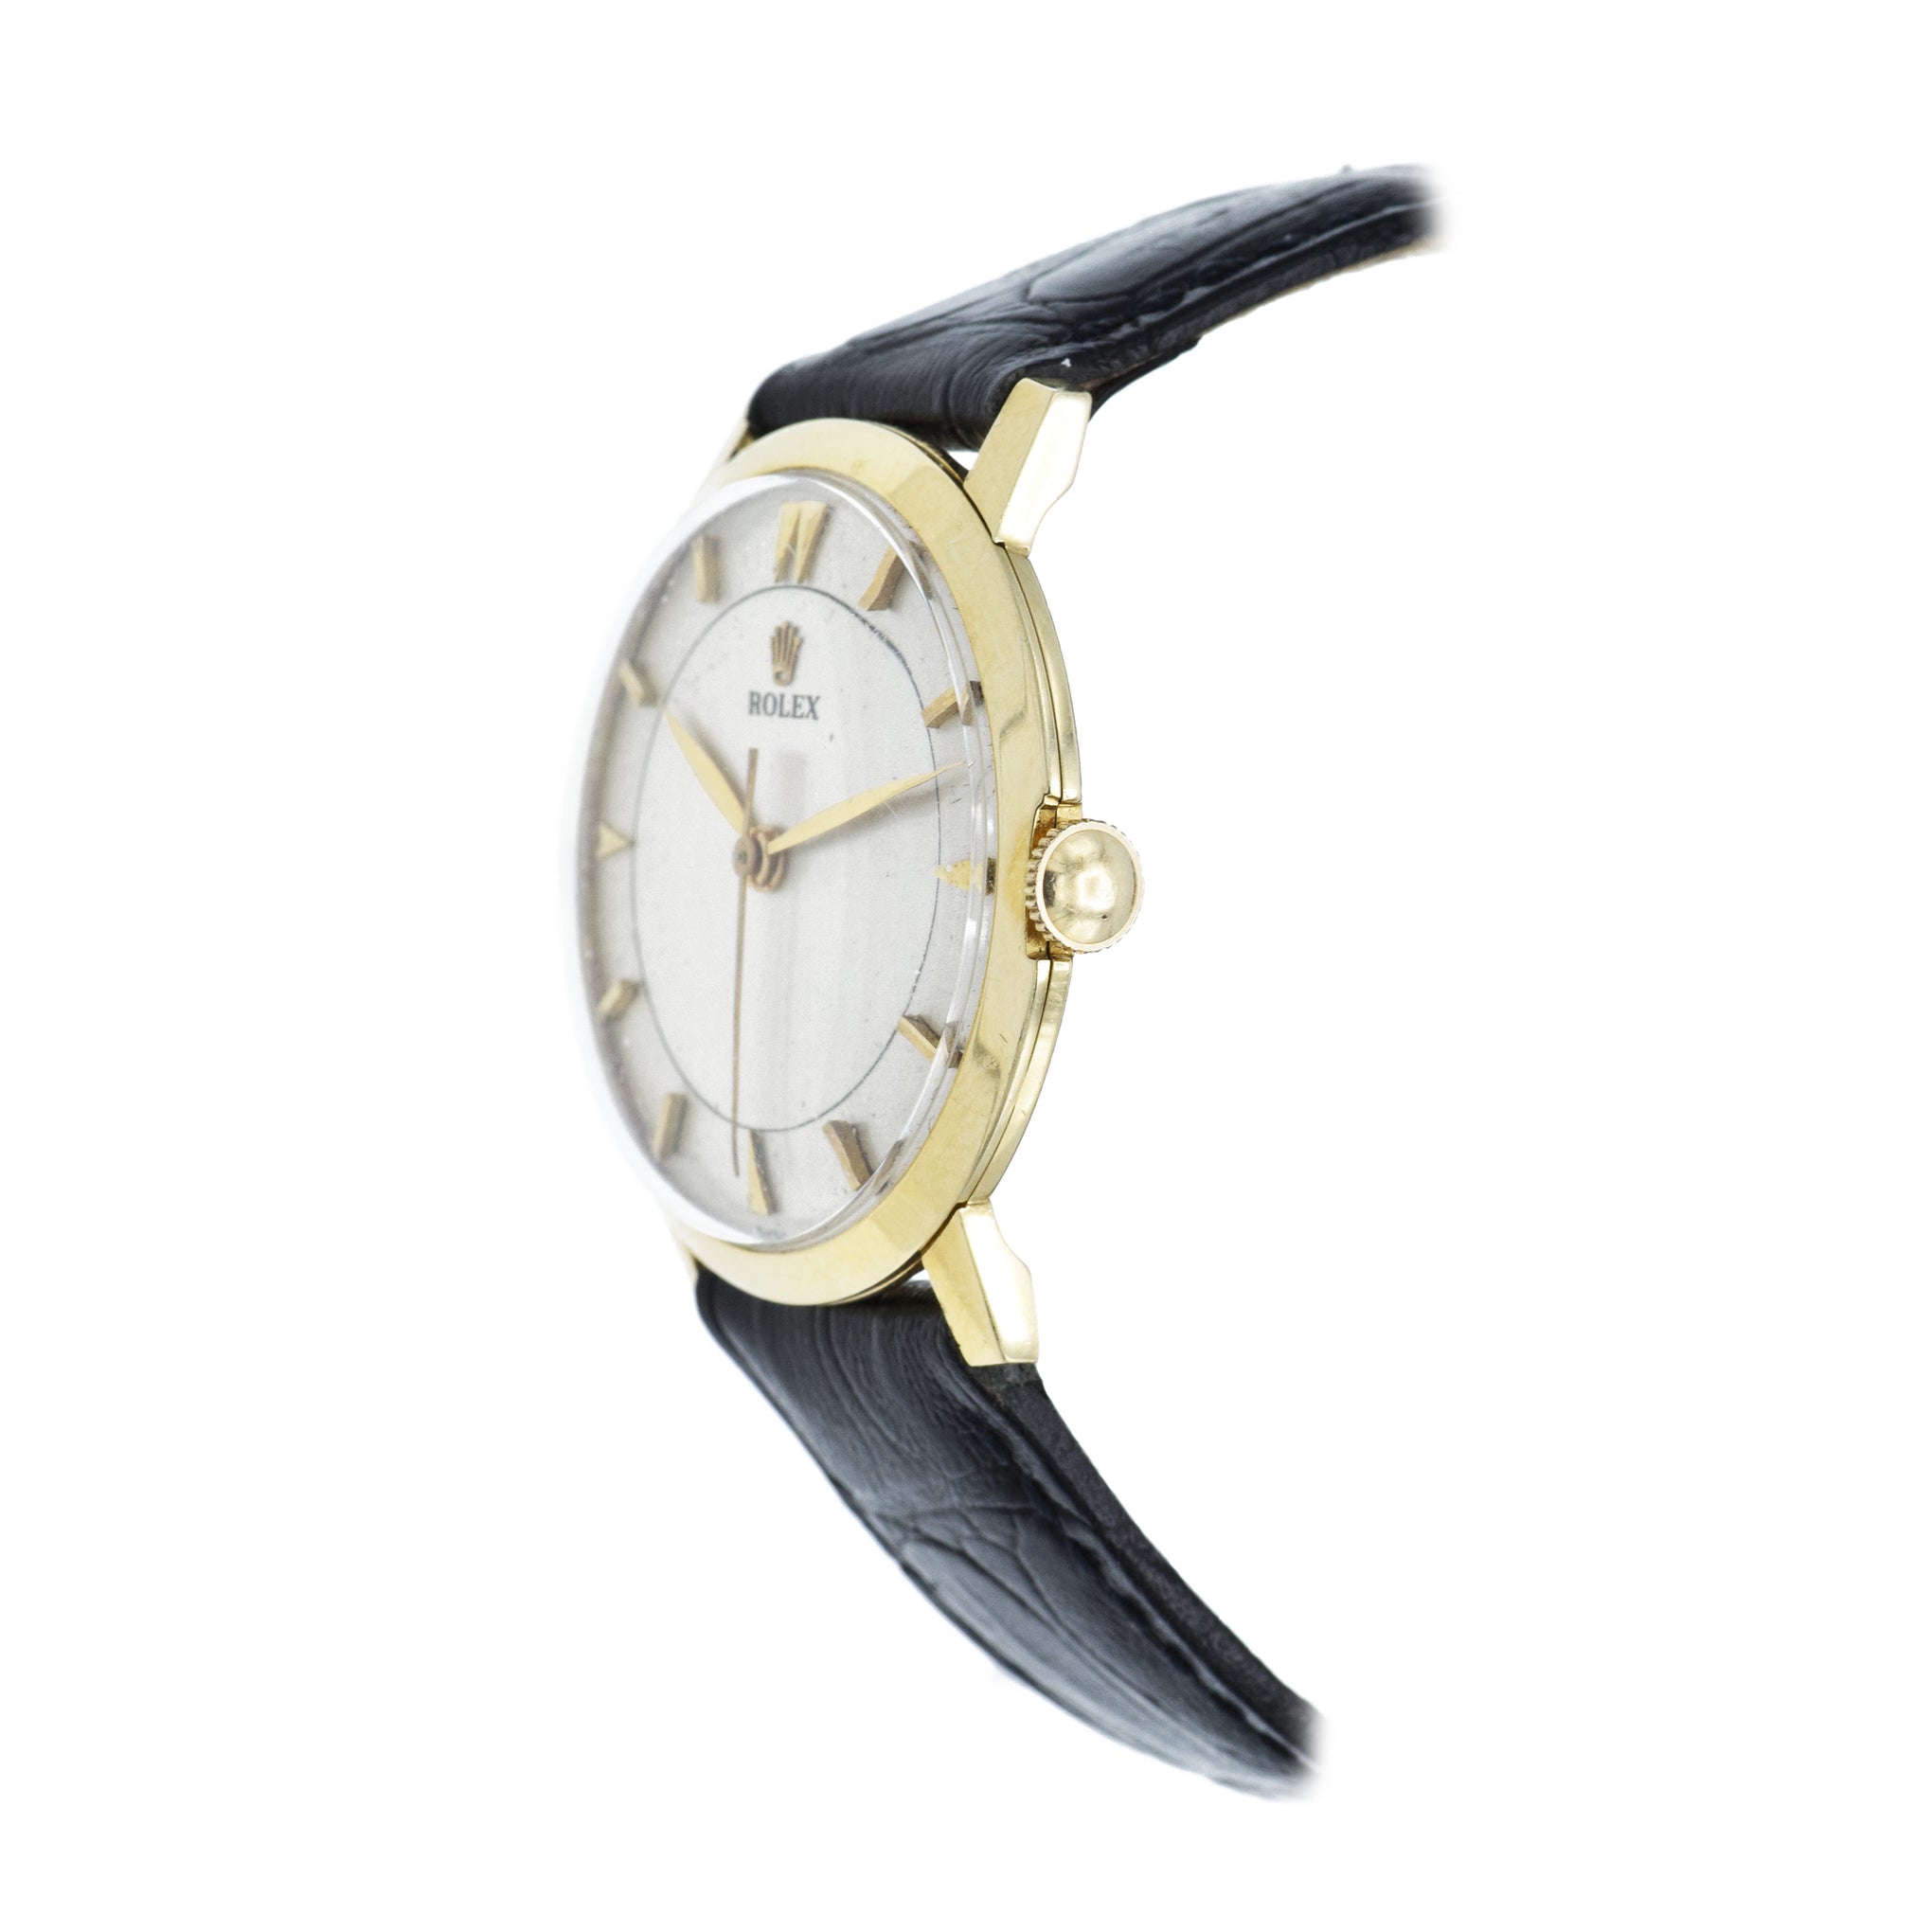 Vintage 1938 Rolex Watch